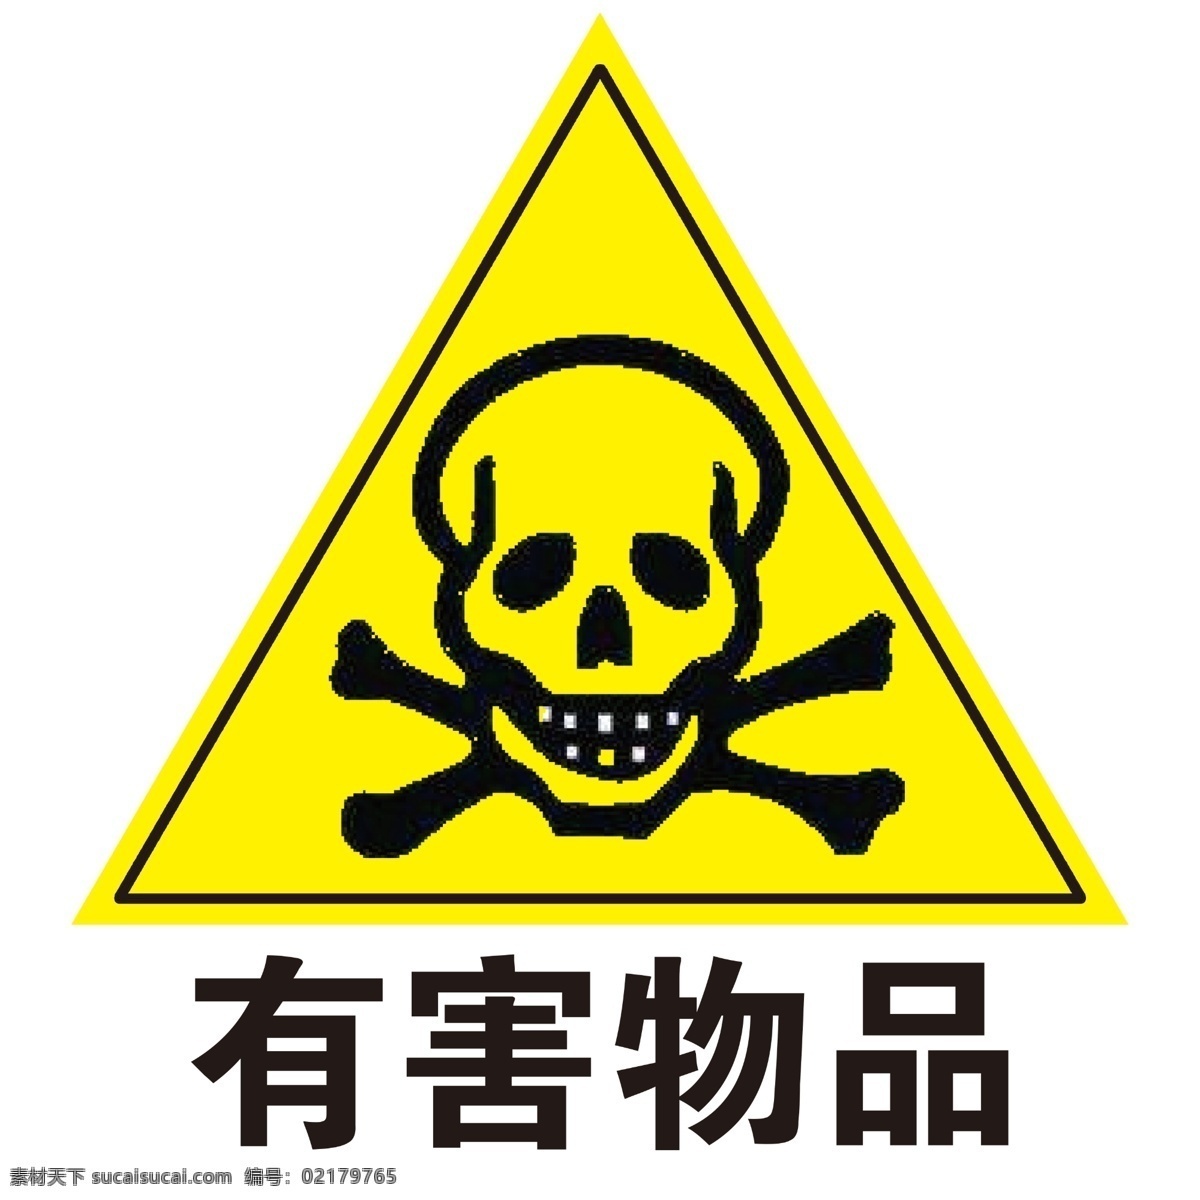 安全 标示 系列 有害 物品 有害物品 标志图标 公共标识标志